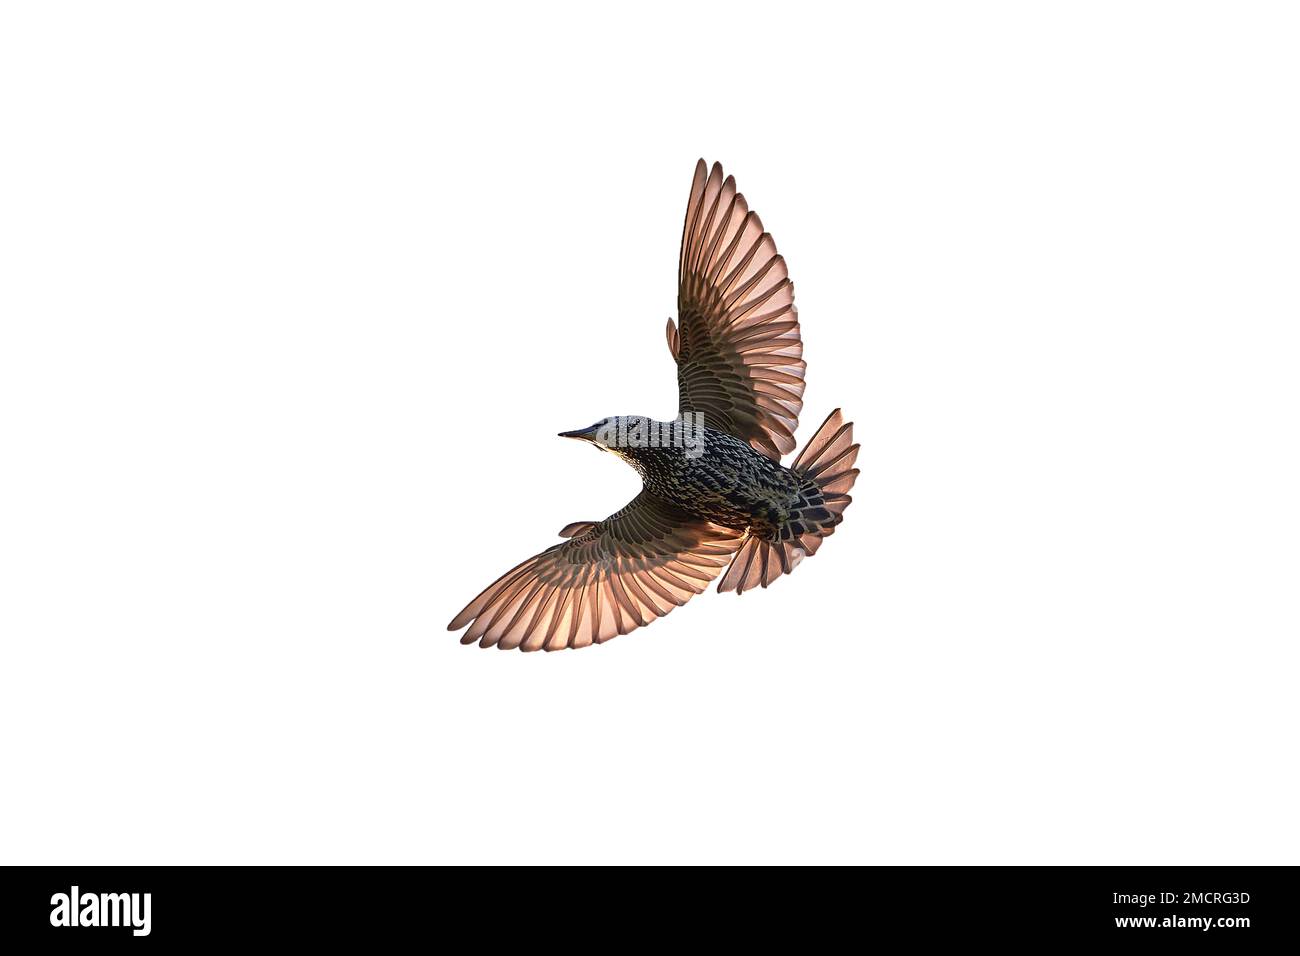 Pájaro estornino común en vuelo aislado (Sturnus vulgaris) Foto de stock